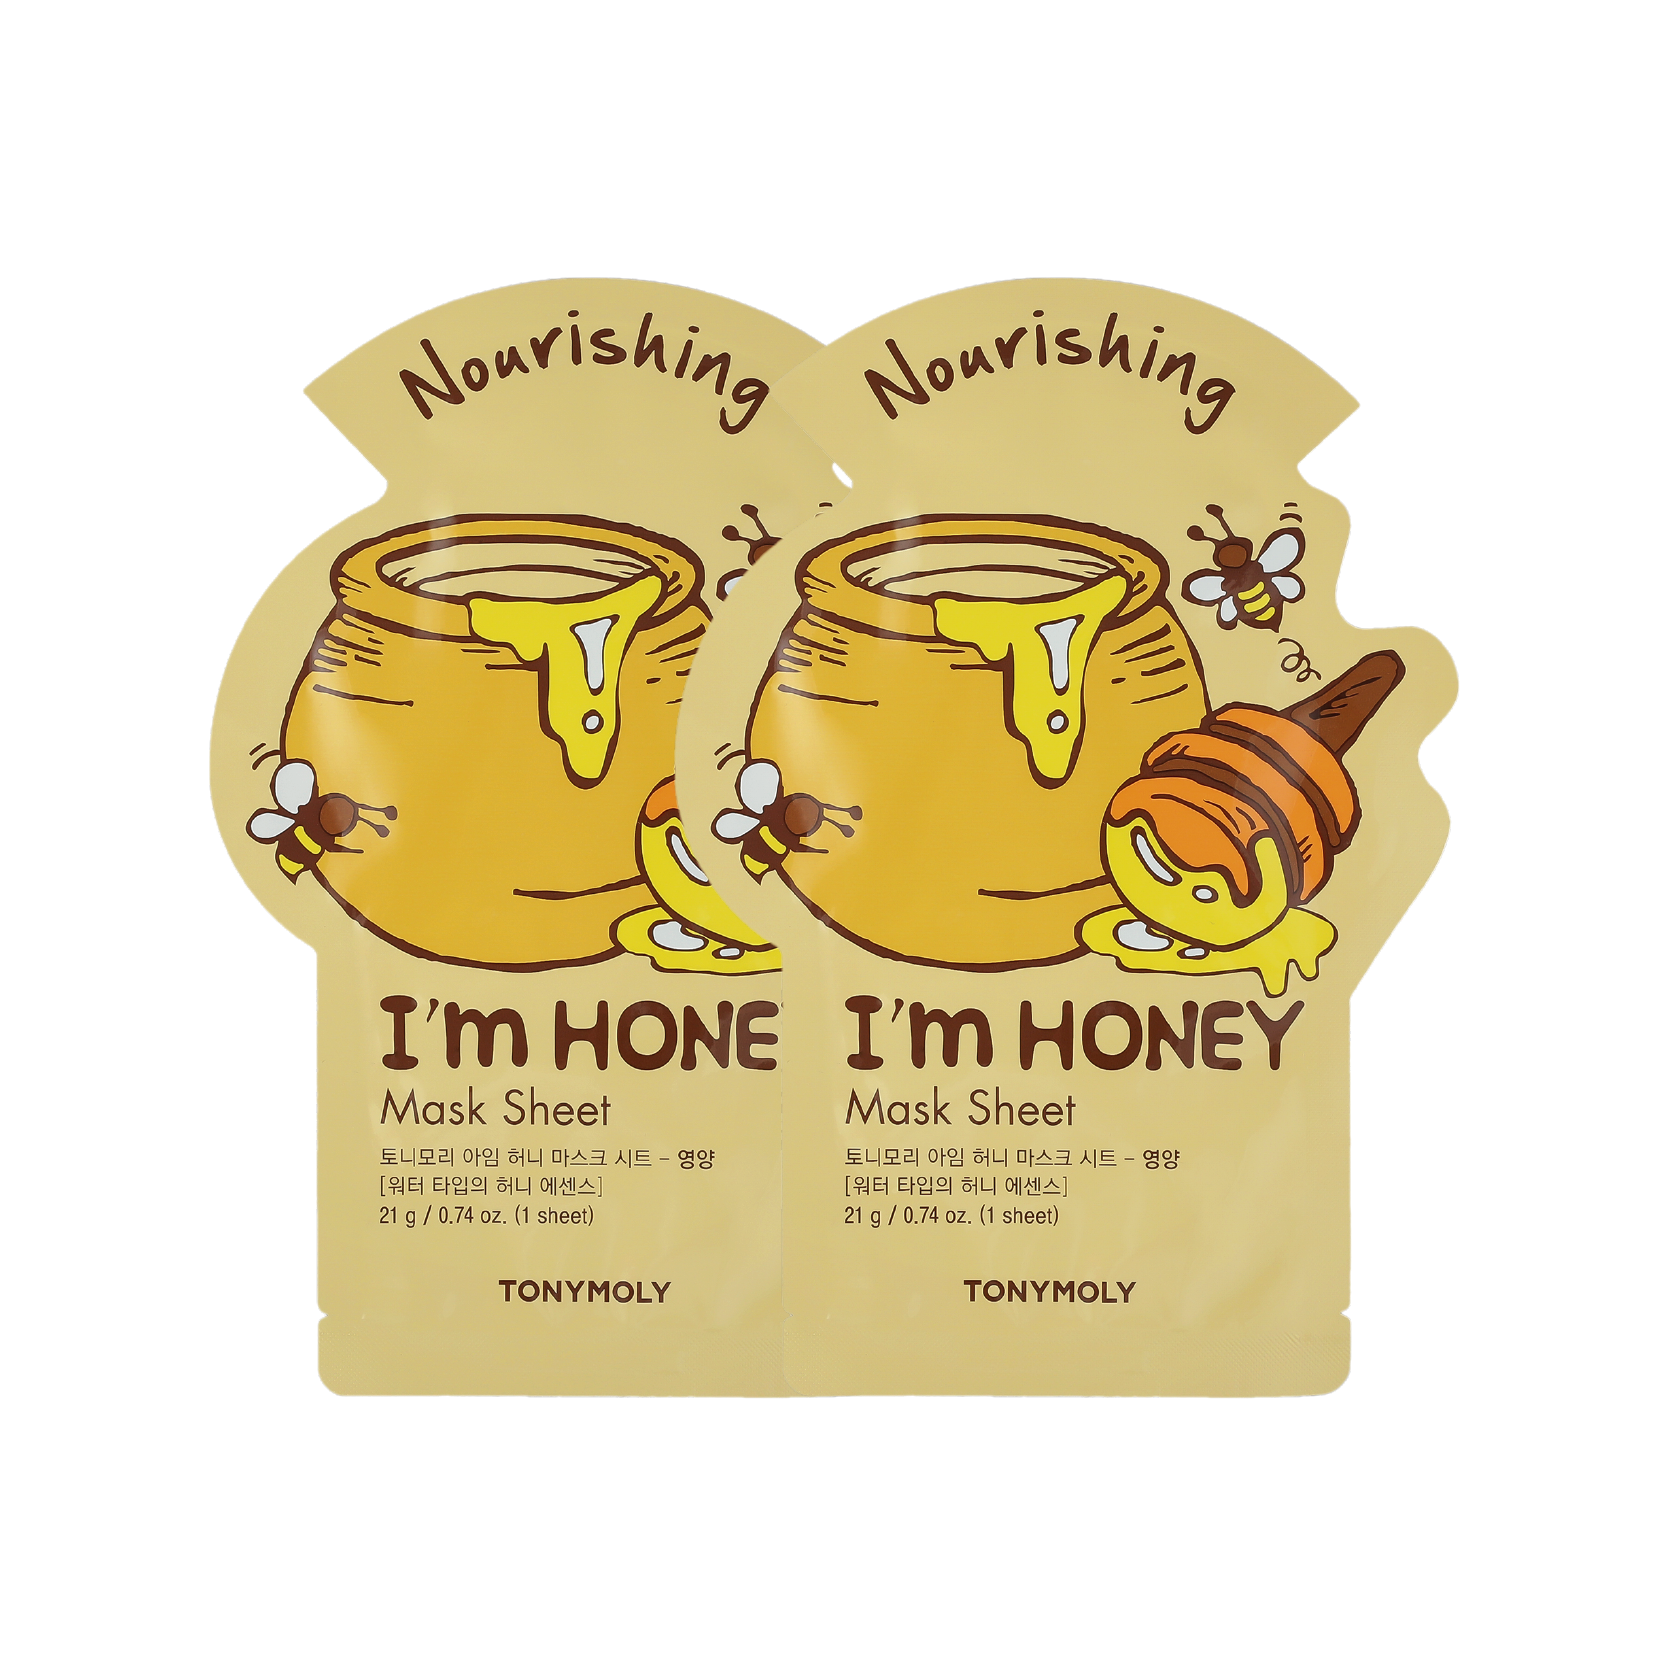 I'm Honey Mask